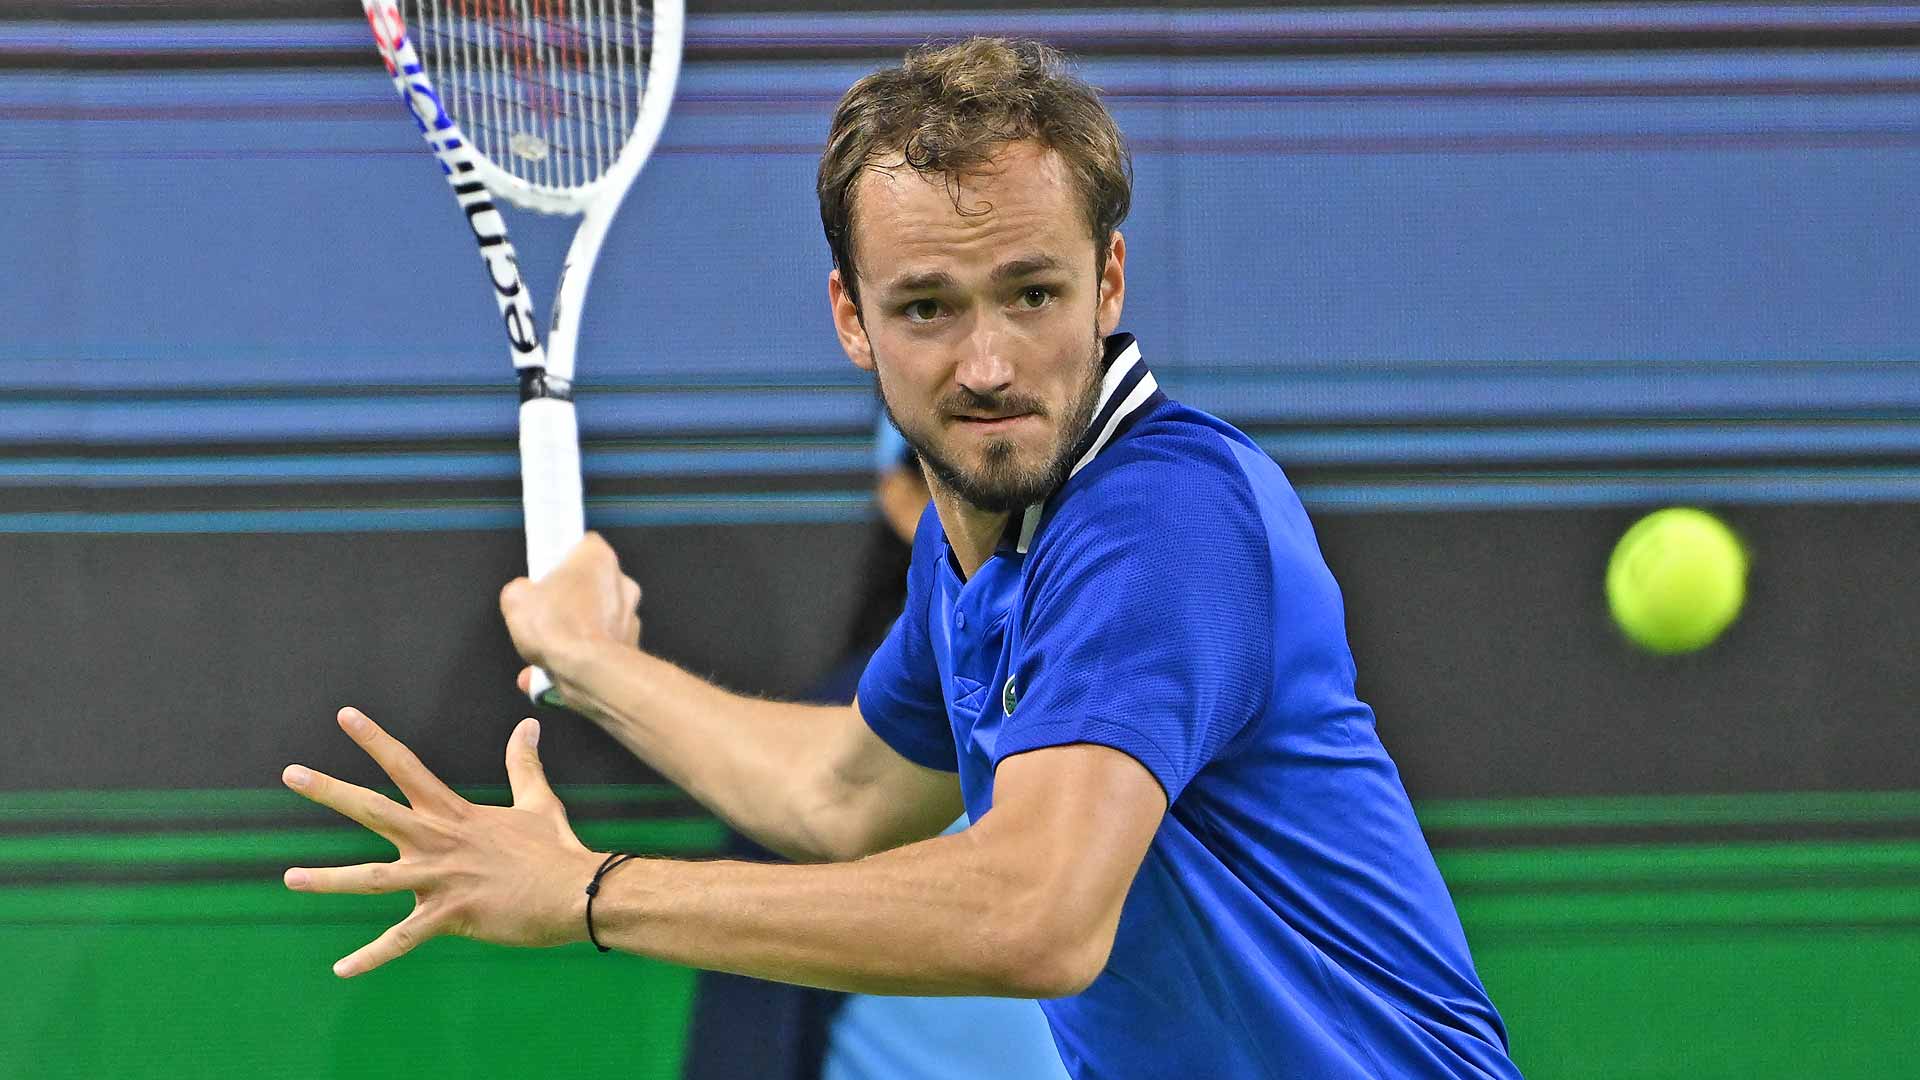 Daniil Medvedev is No. 4 in the PIF ATP Rankings.